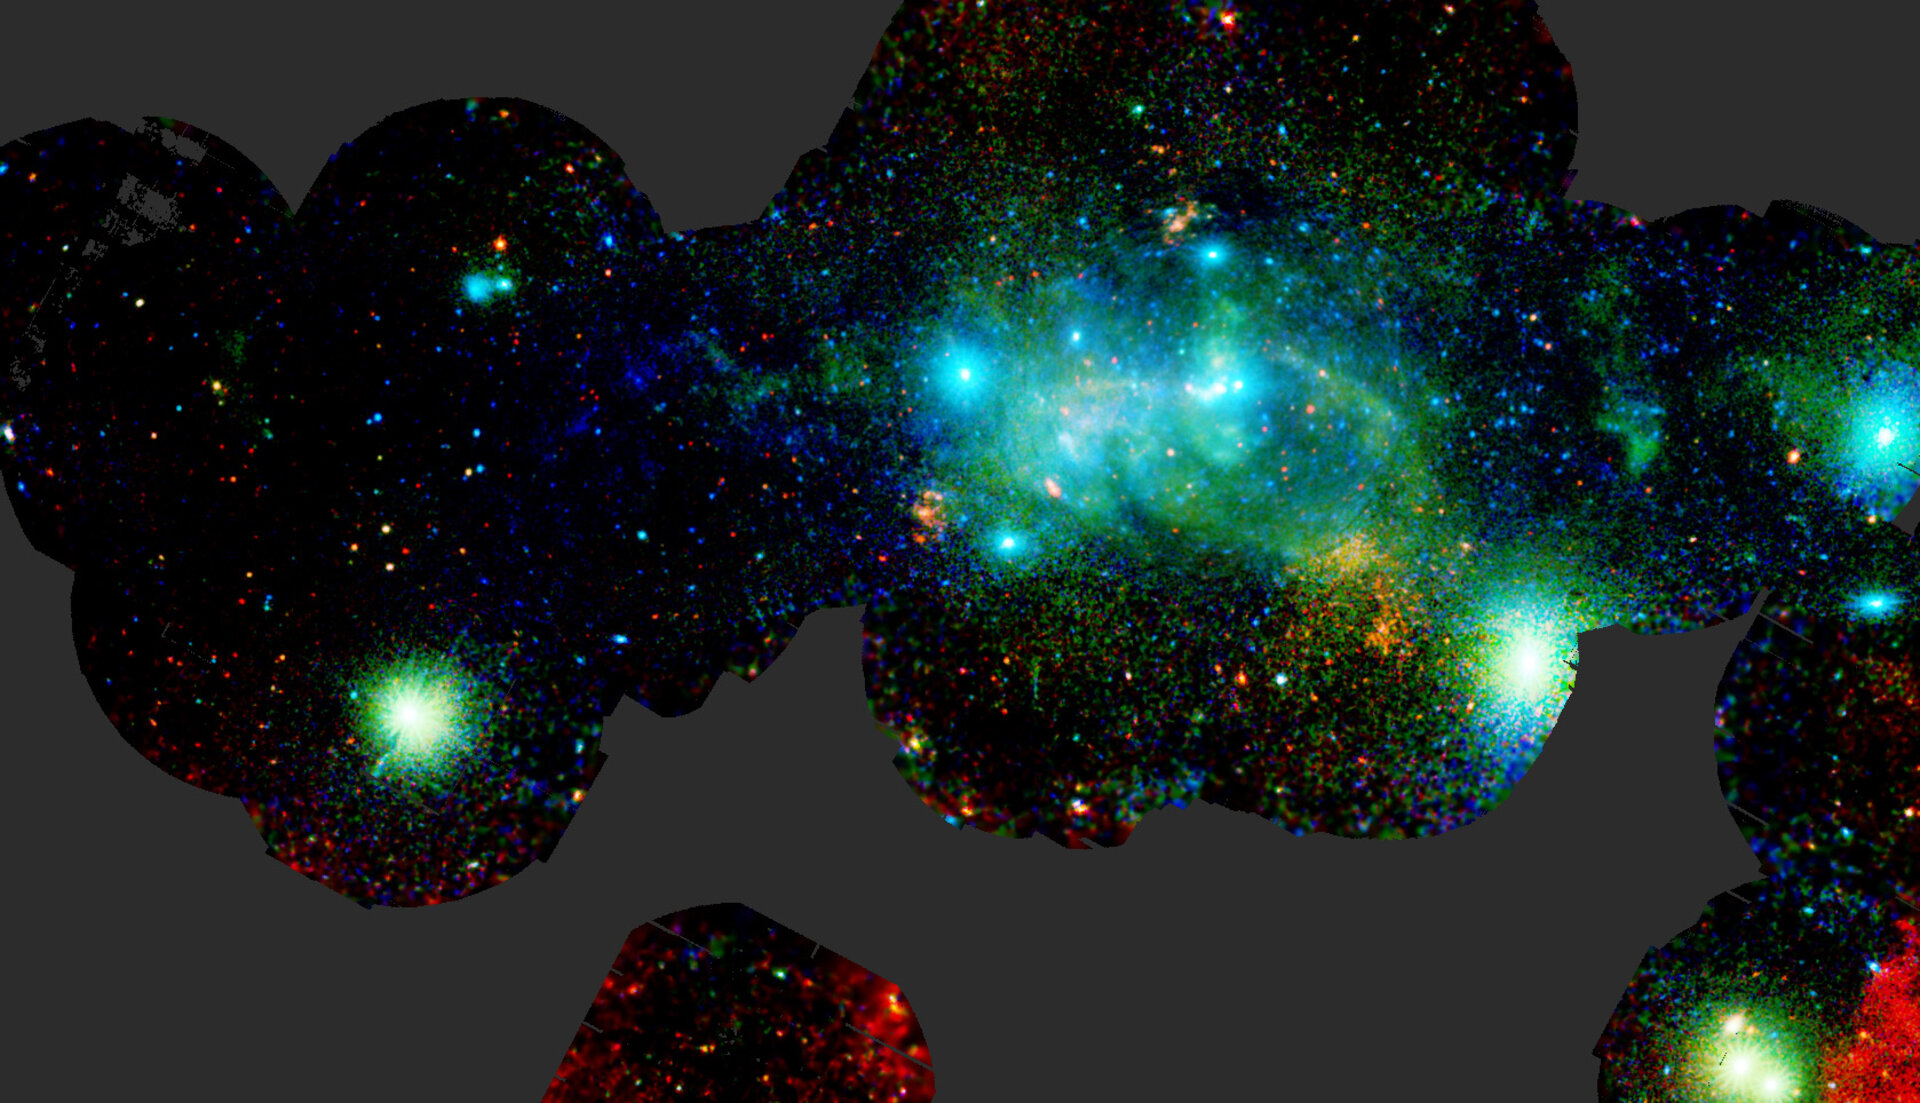 El centro galáctico visto en rayos X